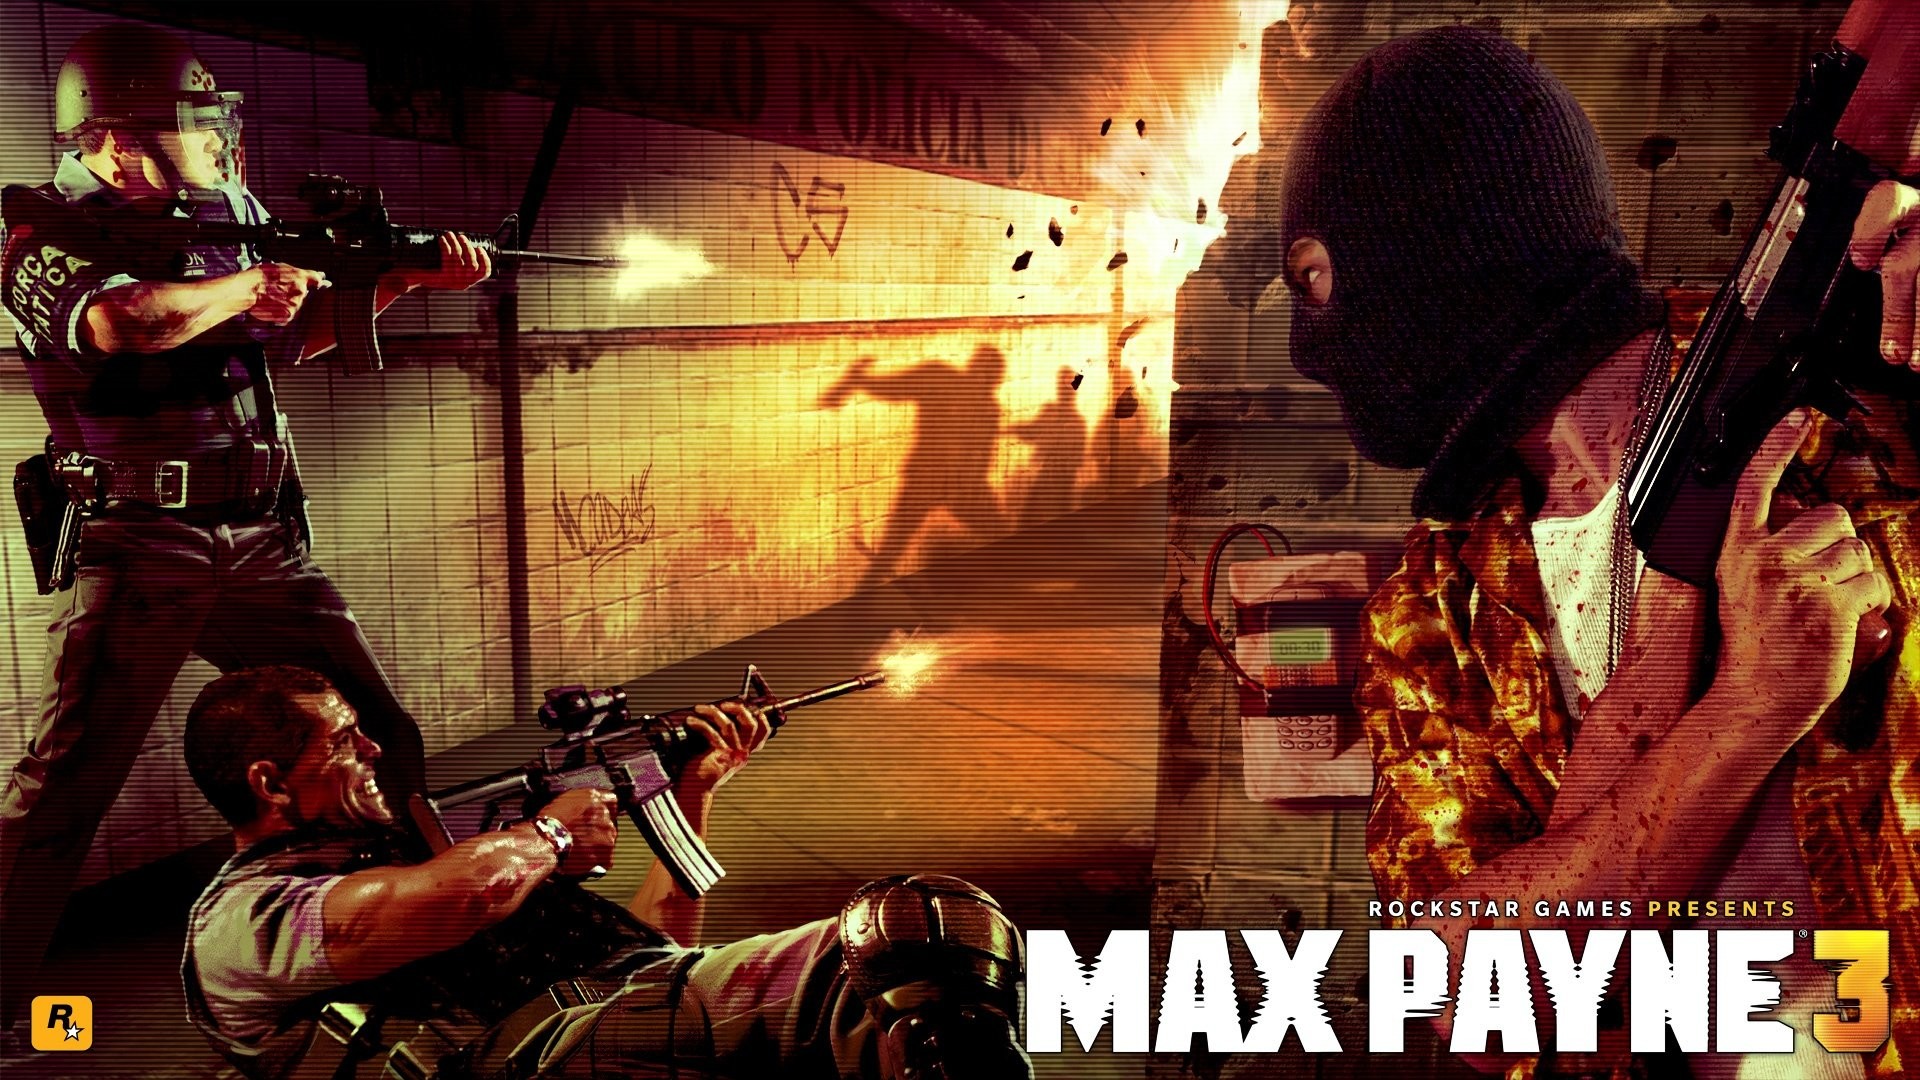 1920x1080 Wallpaper zu Max Payne 3 herunterladen